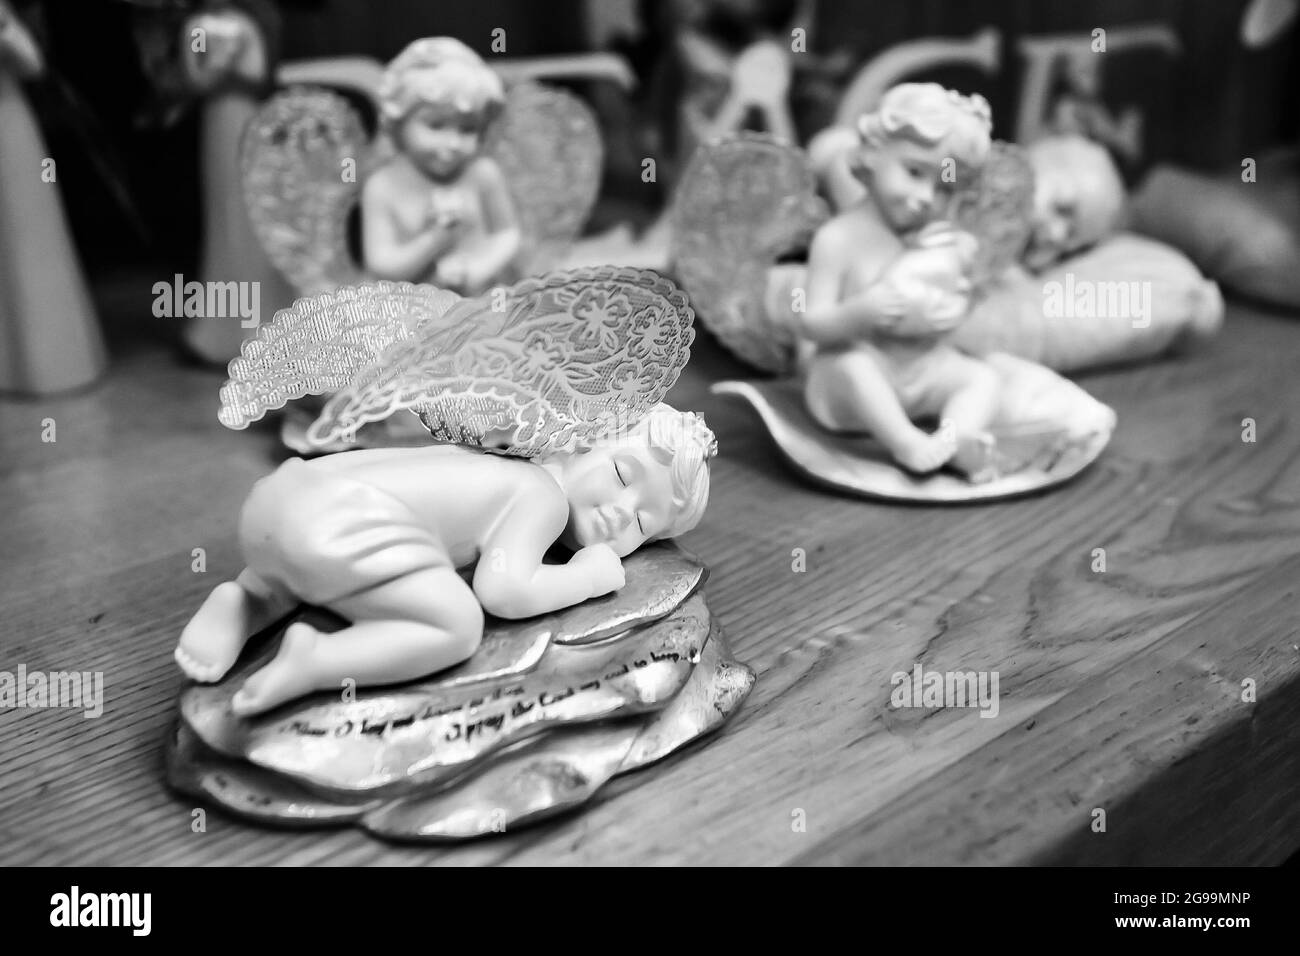 JOHANNESBURG, SUD AFRICA - 06 gennaio 2021: Un primo piano di figurine ornamentali in ceramica angelo per la vendita in un negozio Foto Stock